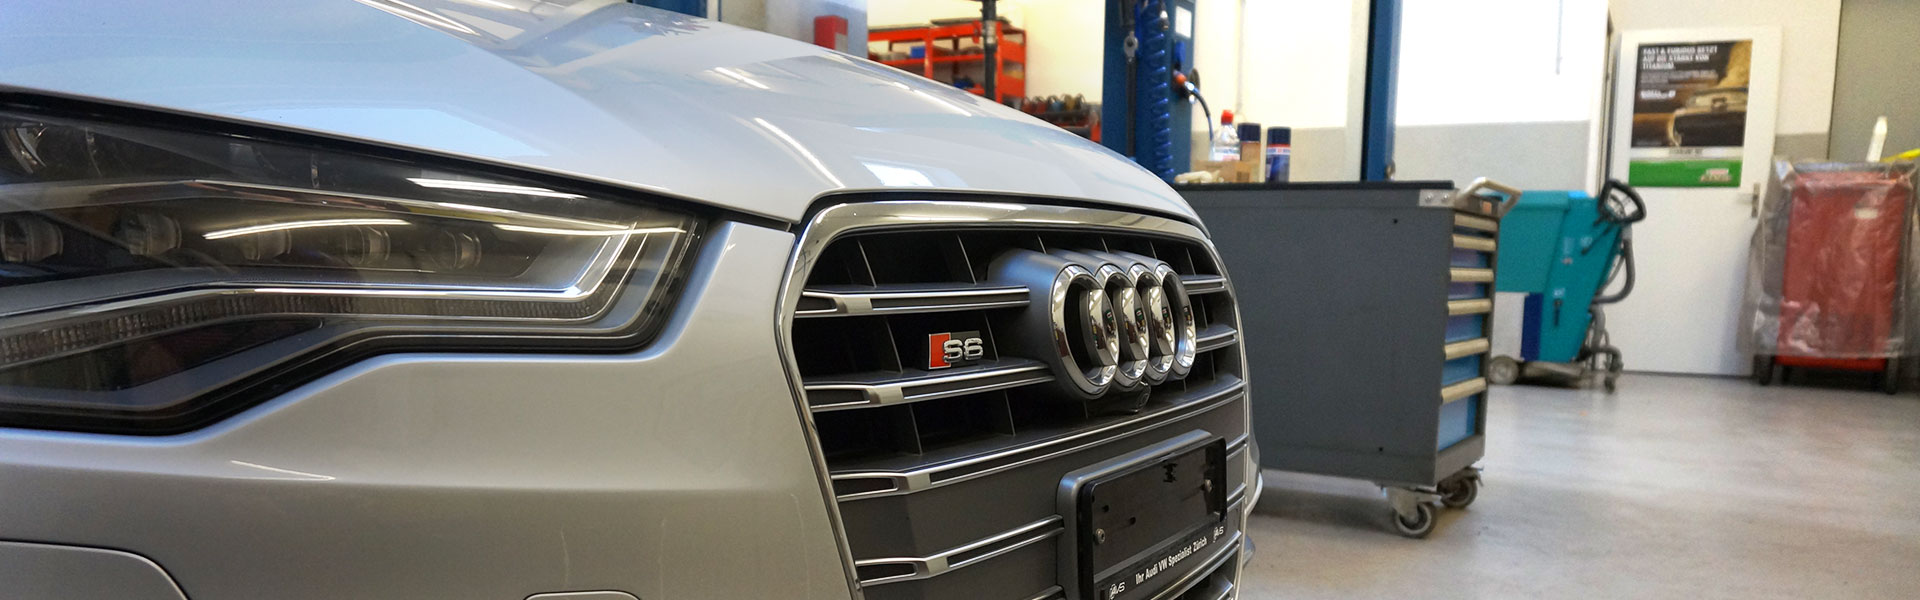 AVS Garage - Audi S6